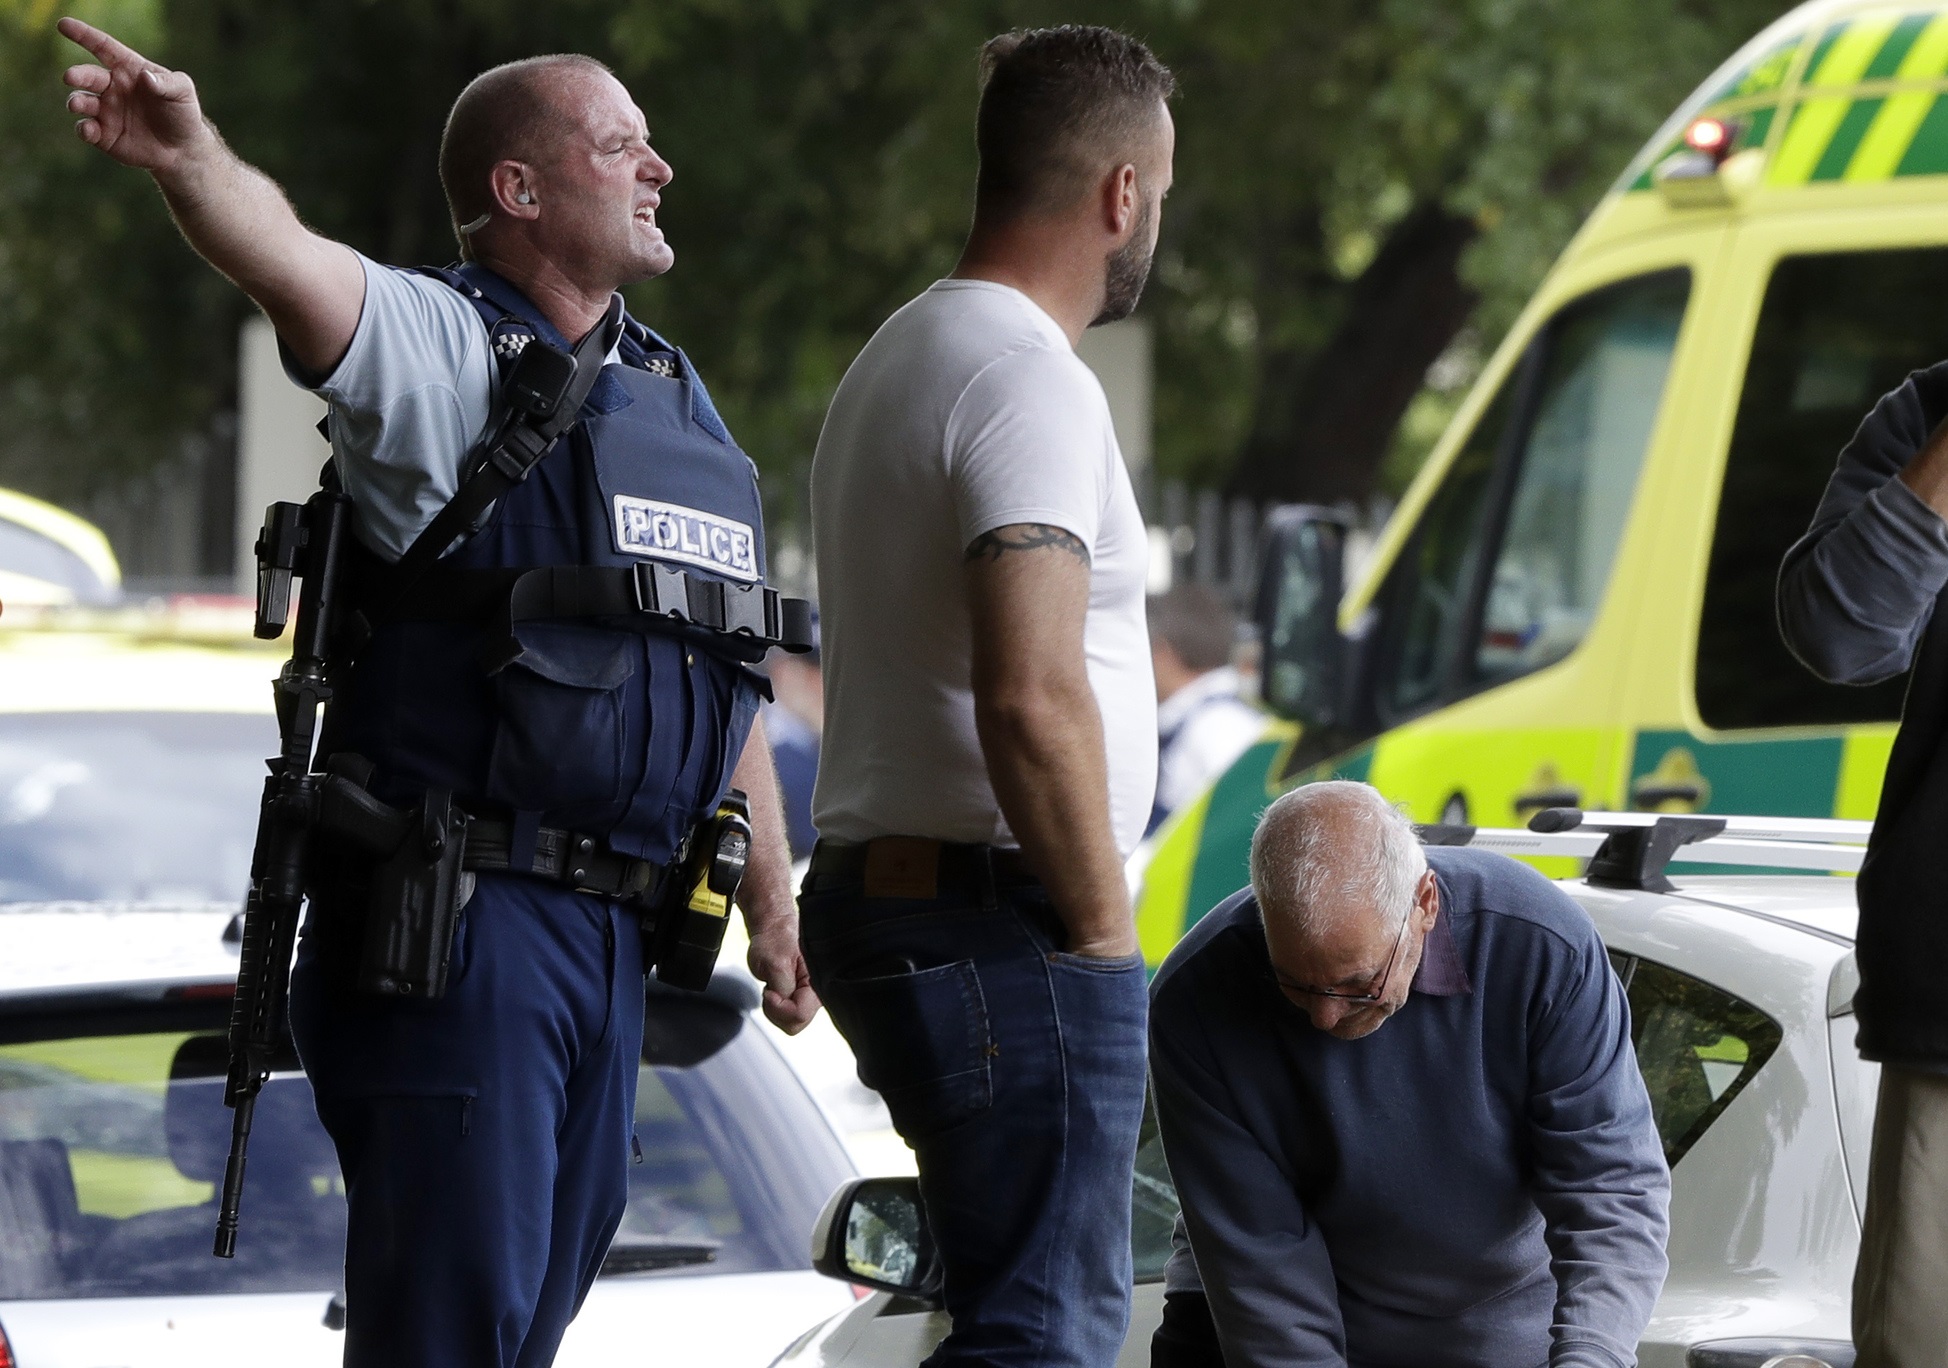 Число погибших в результате теракта в Новой Зеландии выросло до 49